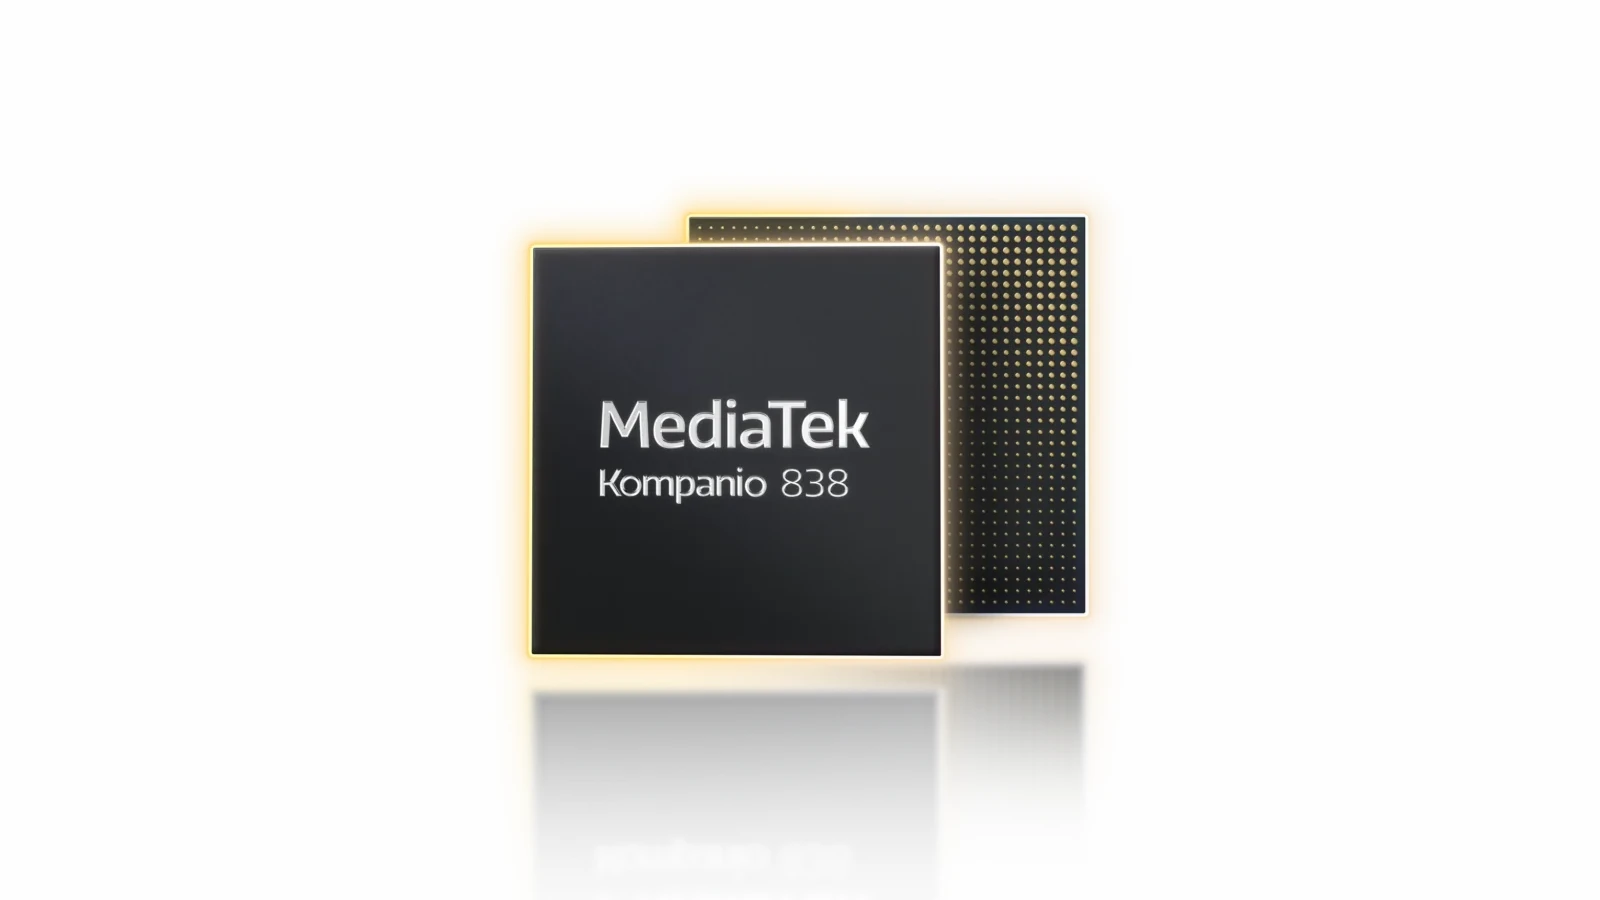 MediaTek が プレミアム Chromebook 向けチップセット MediaTek Kompanio 838 を発表